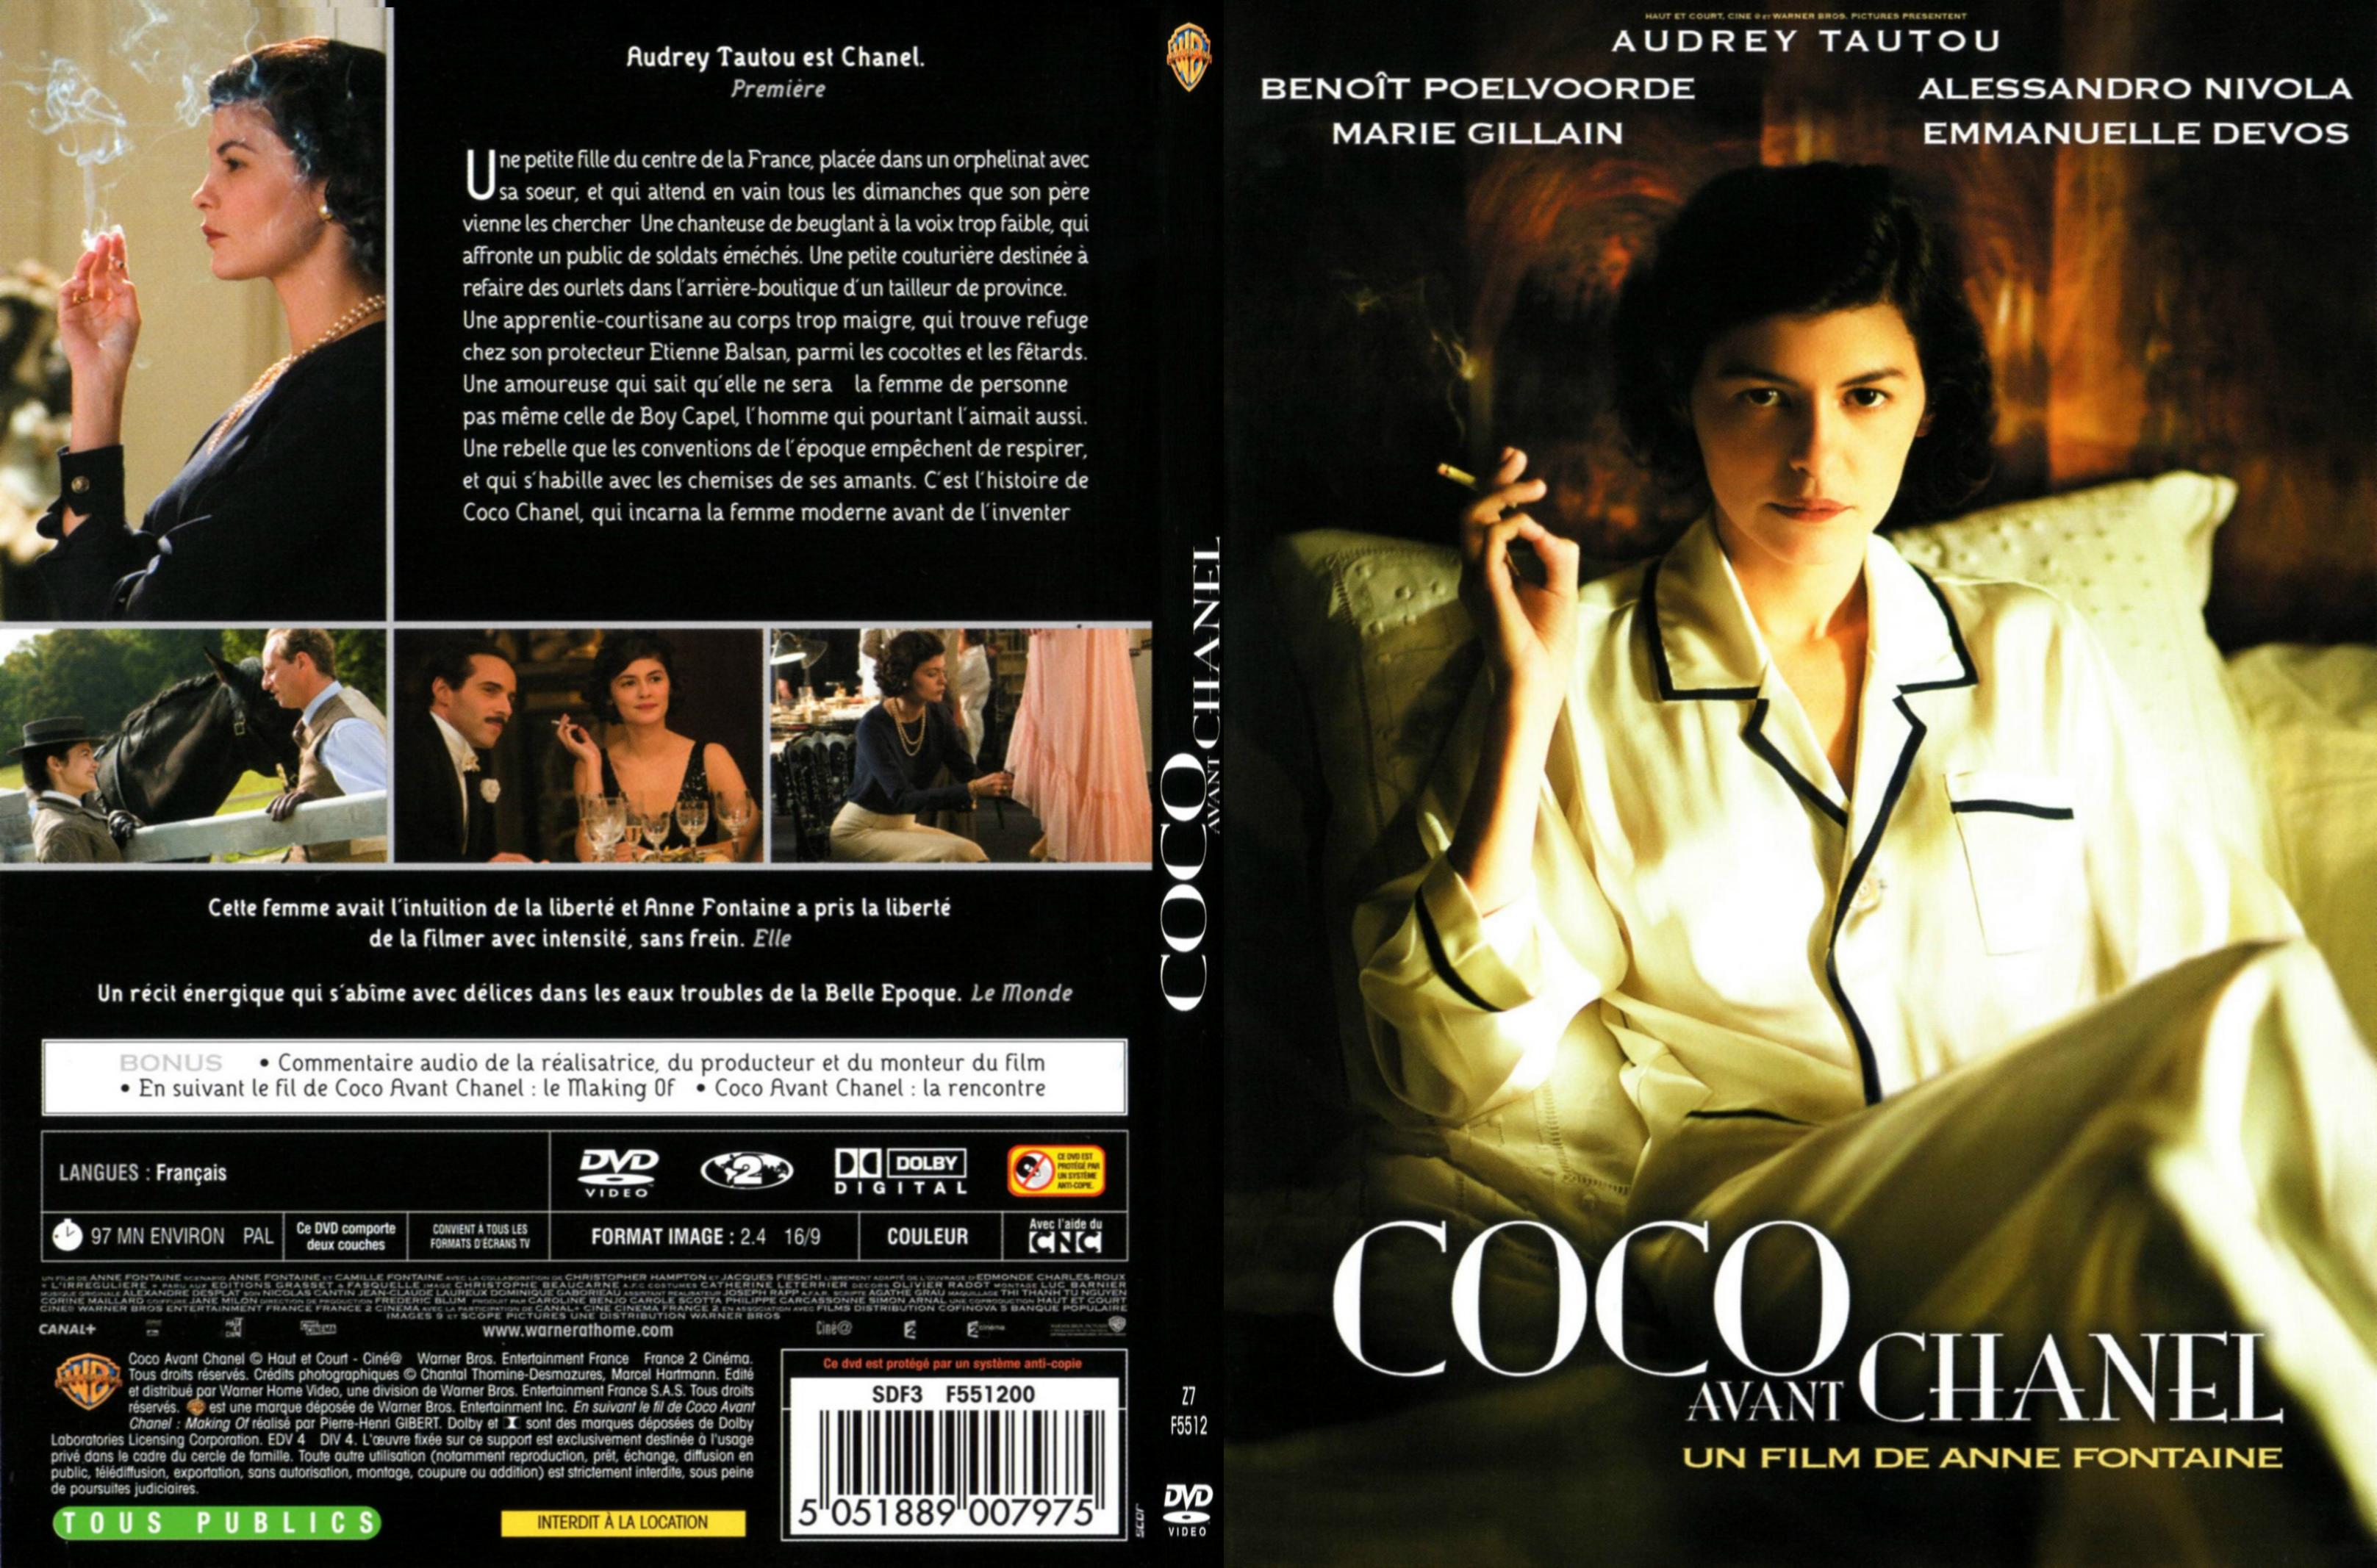 Jaquette DVD Coco avant Chanel - SLIM